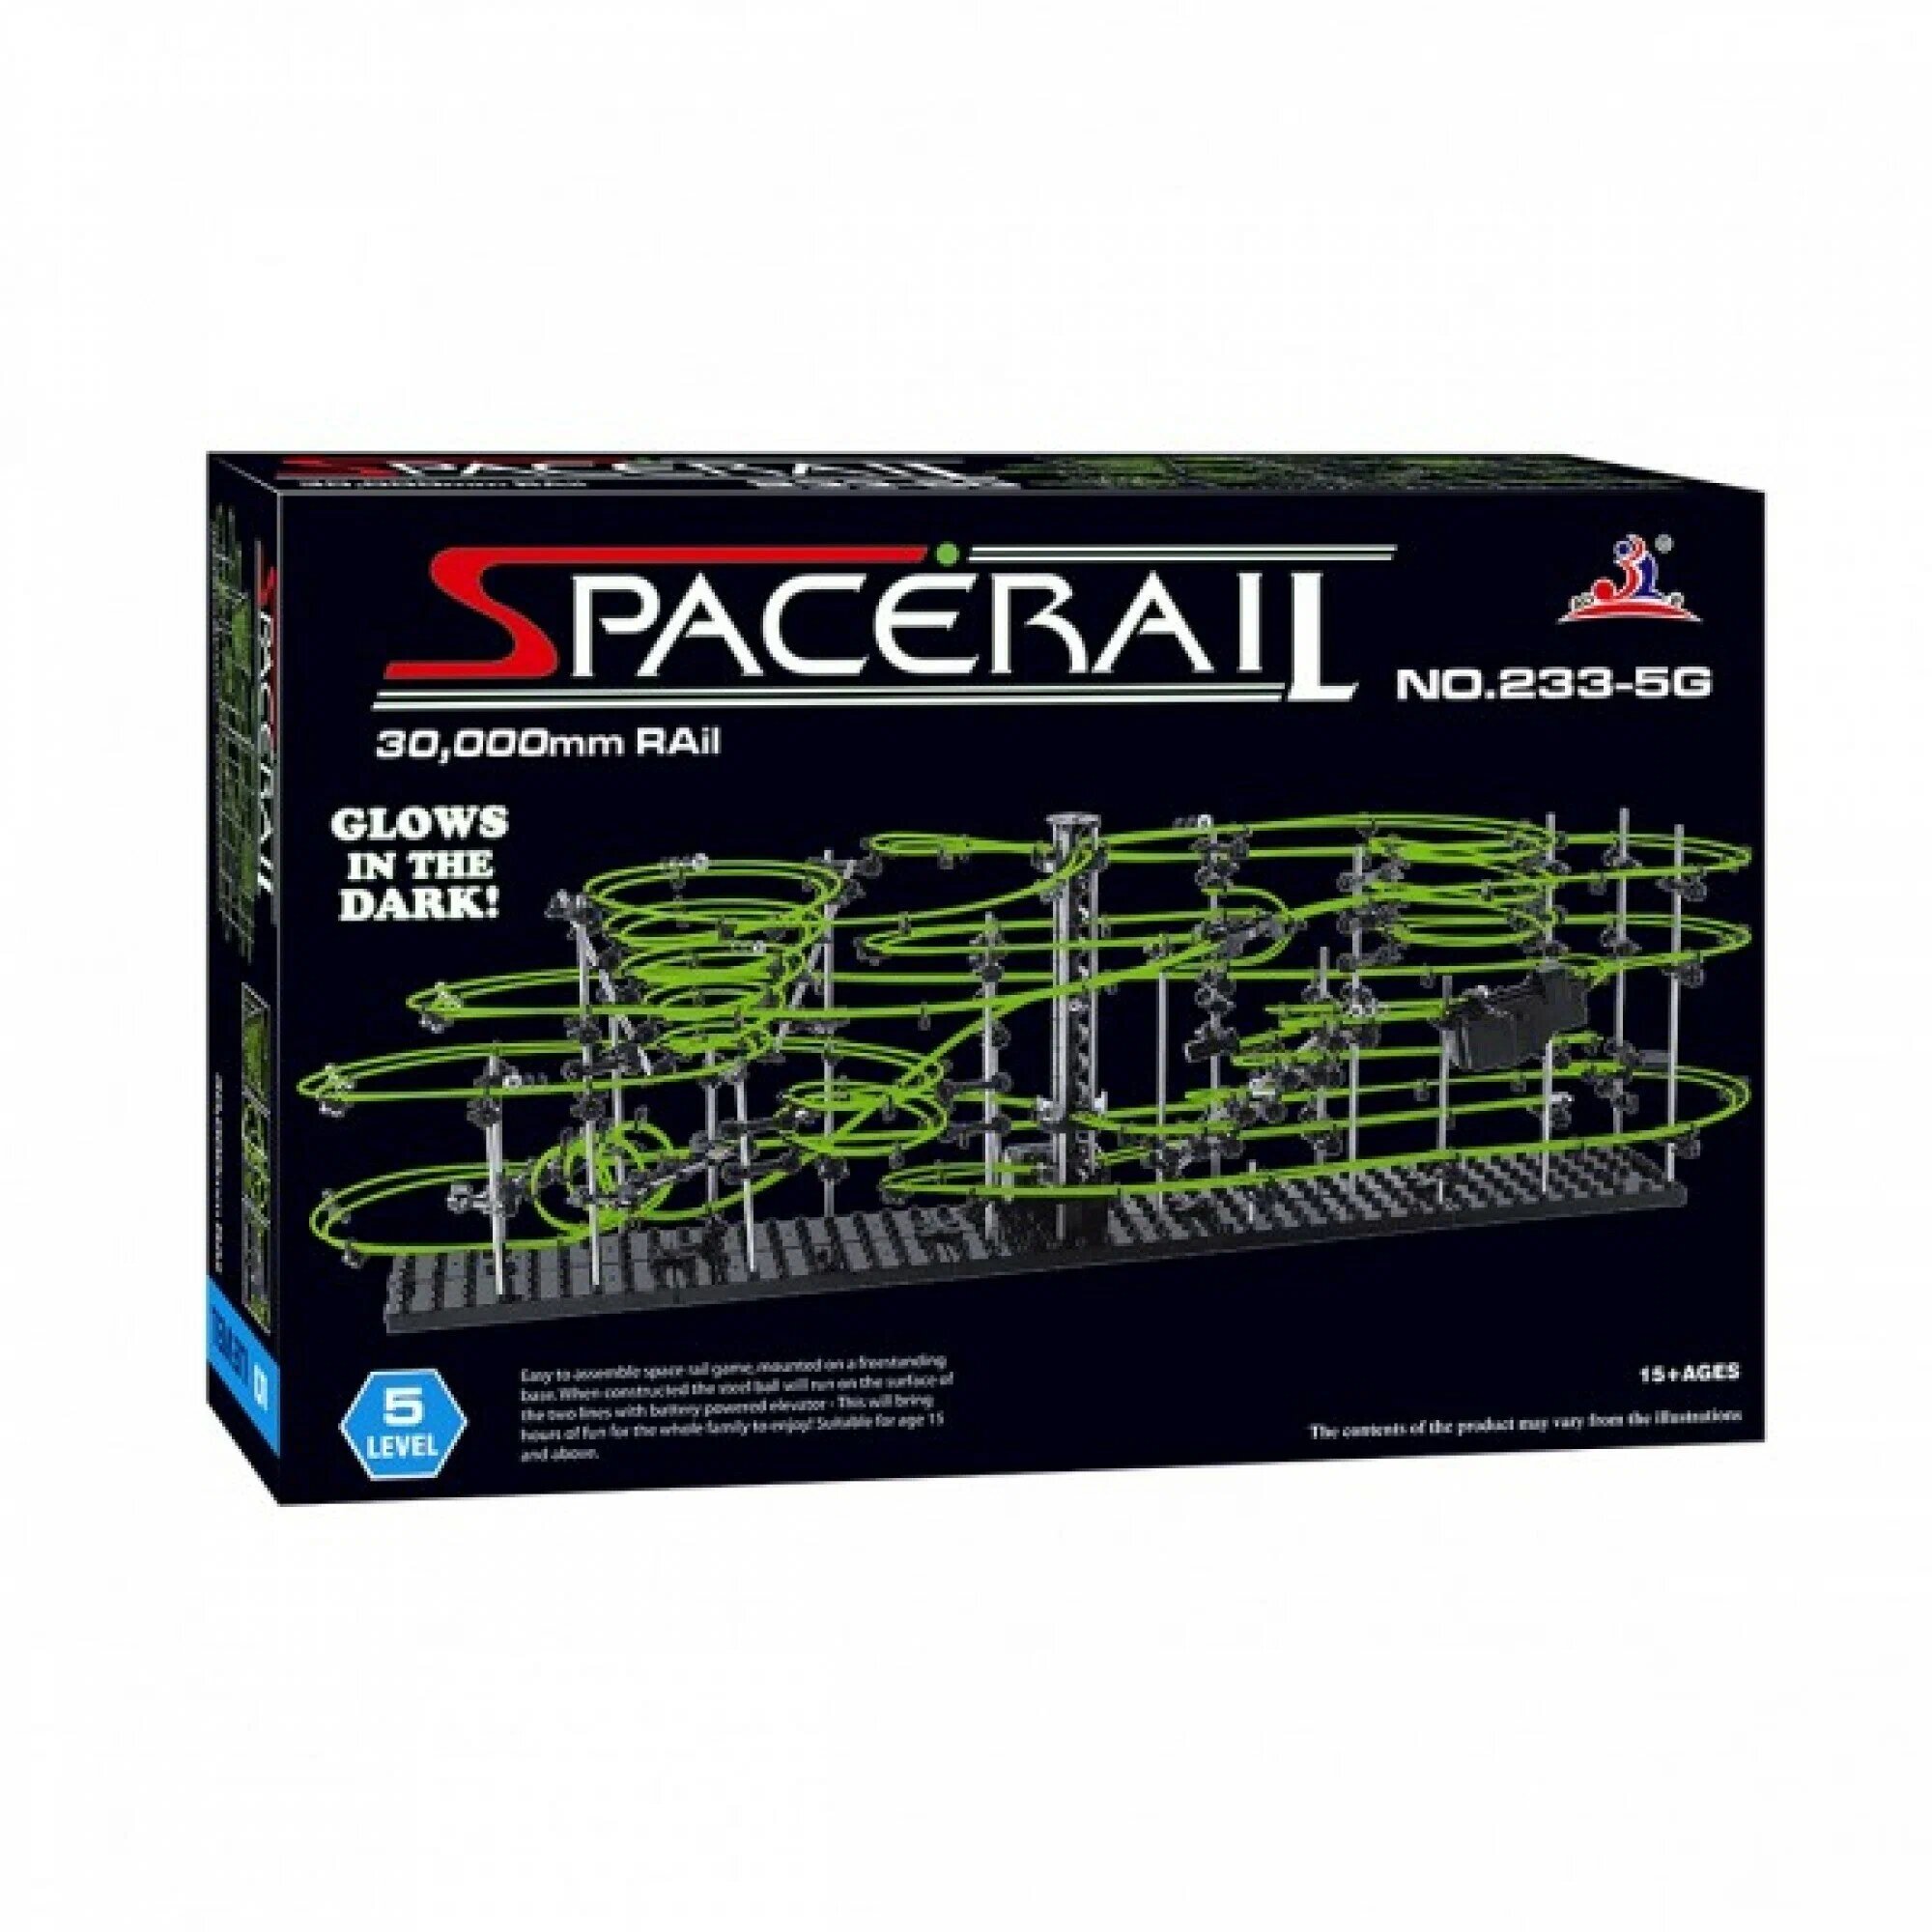 Конструкторы SpaceRail SpaceRail Динамический конструктор Космические горки, новая серия, светящиеся рельсы, уровень 5 - 233-5G